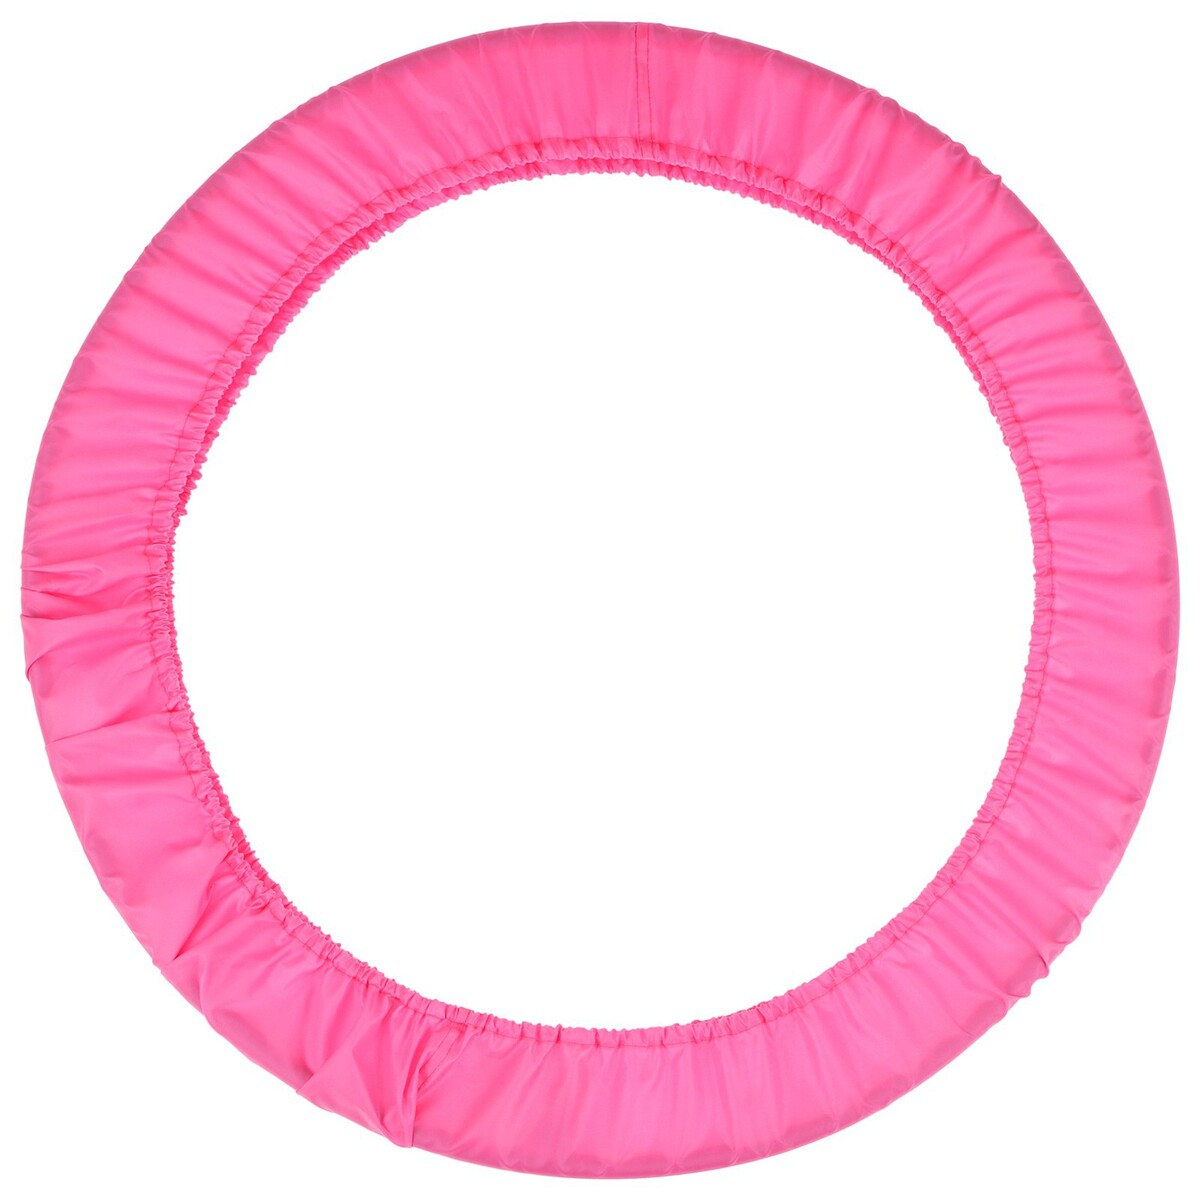 Чехол для обруча grace dance, d=80 см, цвет розовый чехол на подушку с кисточками этель розовый 45х45 см 100% п э велюр